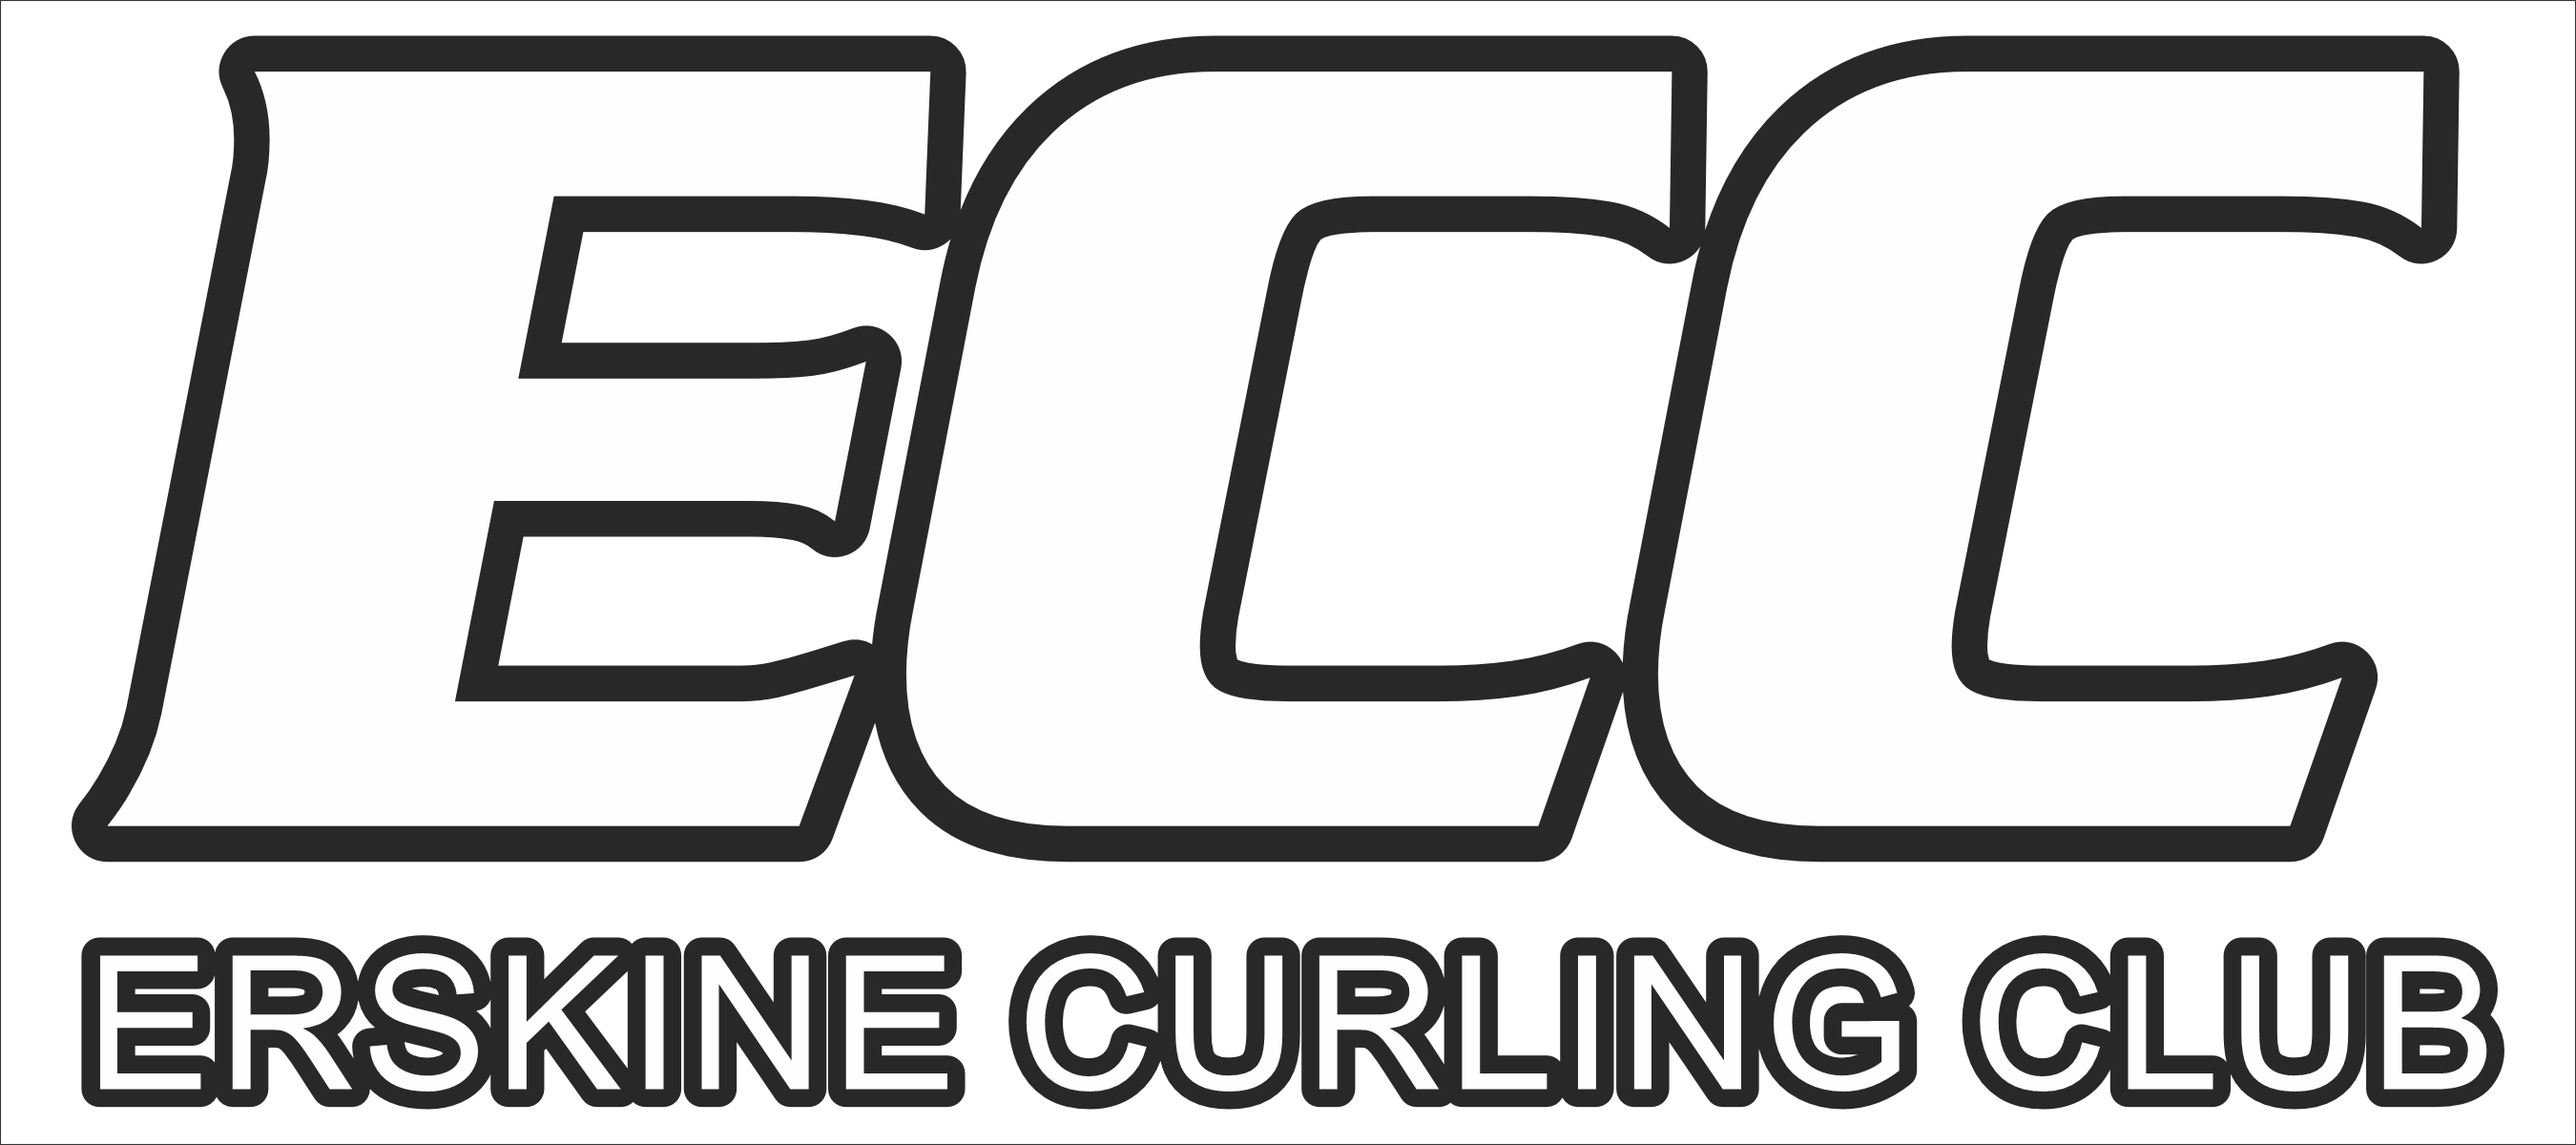 Erskine Curling Club